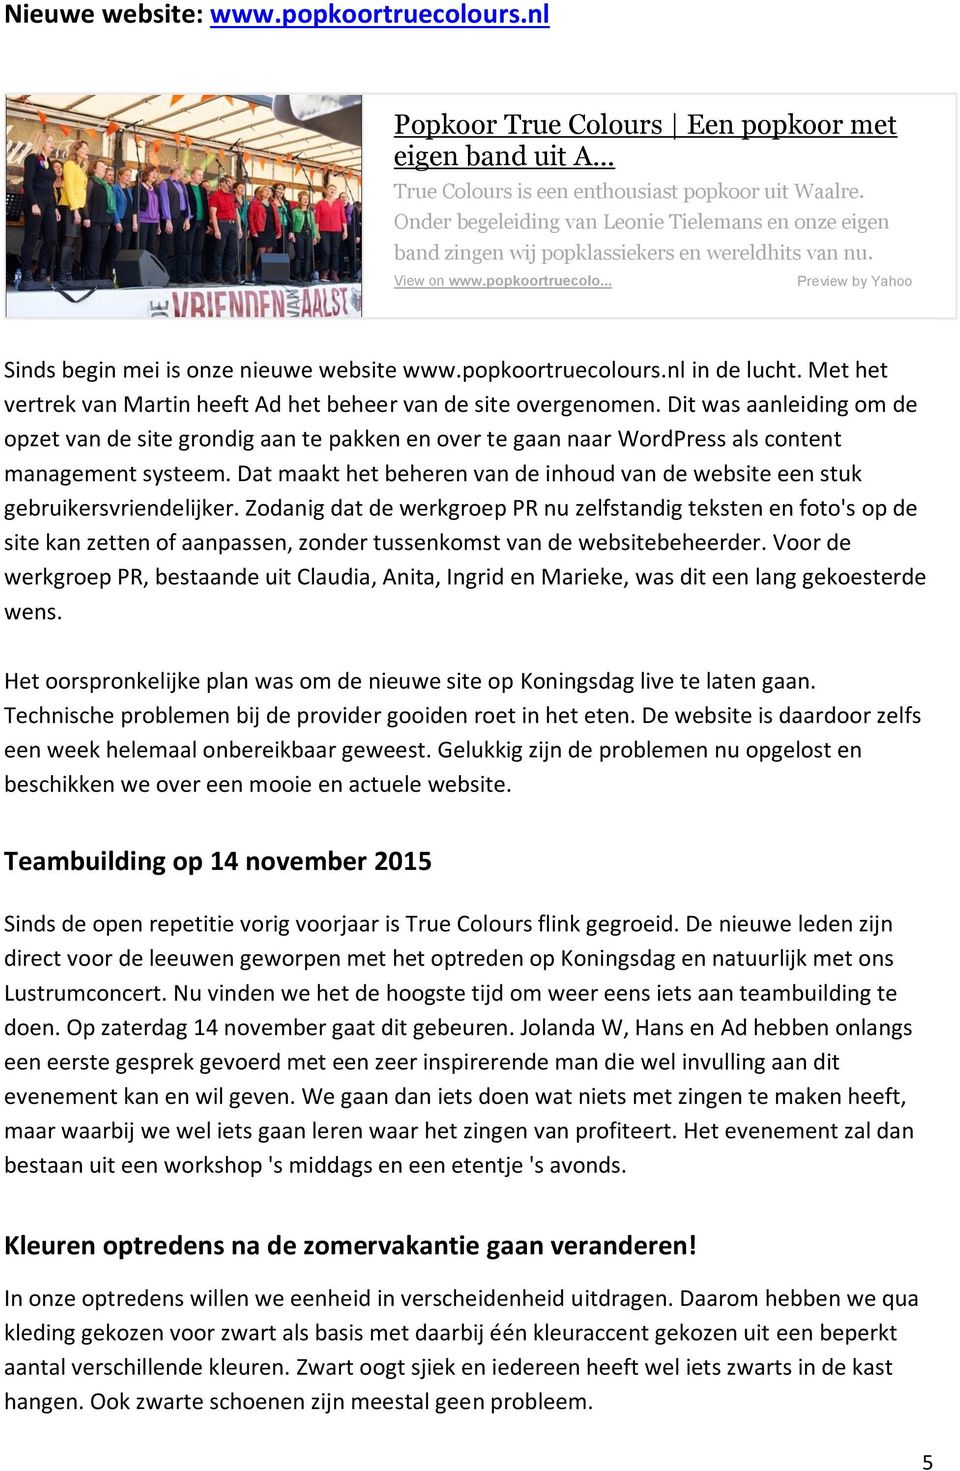 popkoortruecolours.nl in de lucht. Met het vertrek van Martin heeft Ad het beheer van de site overgenomen.